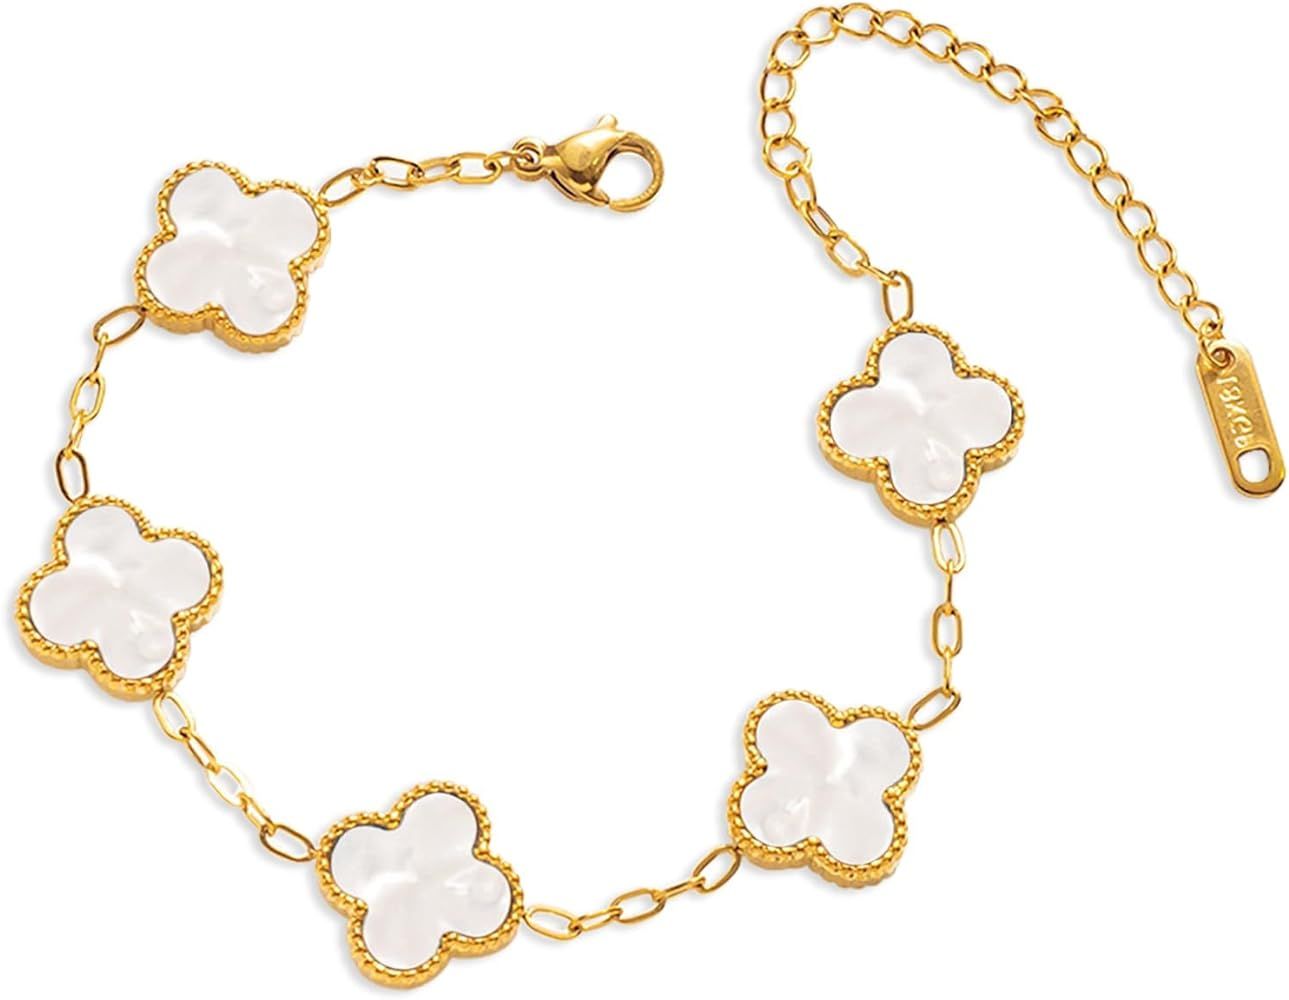 18k Gold Bracelet Fashion gold | Amazon (US)